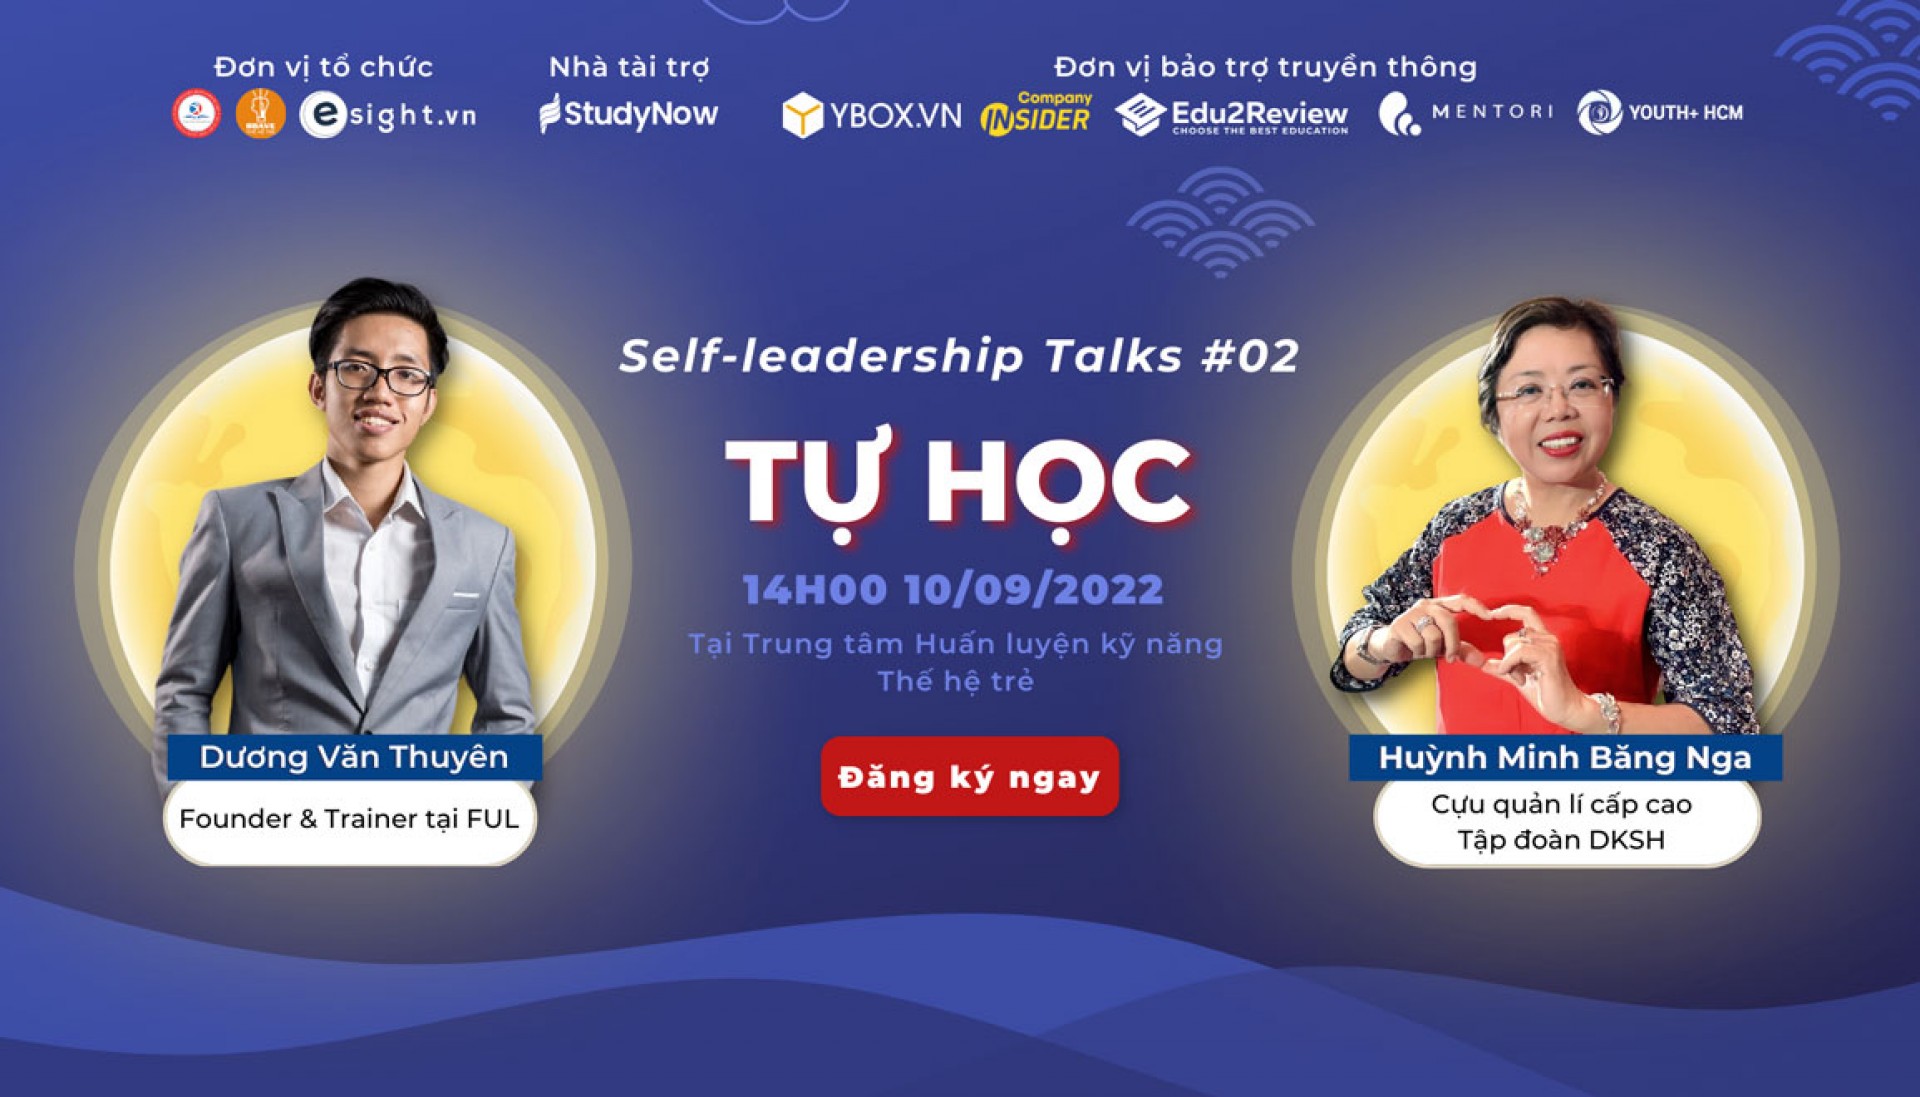 [HCM] Nâng Cao Kỹ Năng Tự Học Và Phát Triển Bản Thân Cùng “Self-Leadership Talk #02” 2022